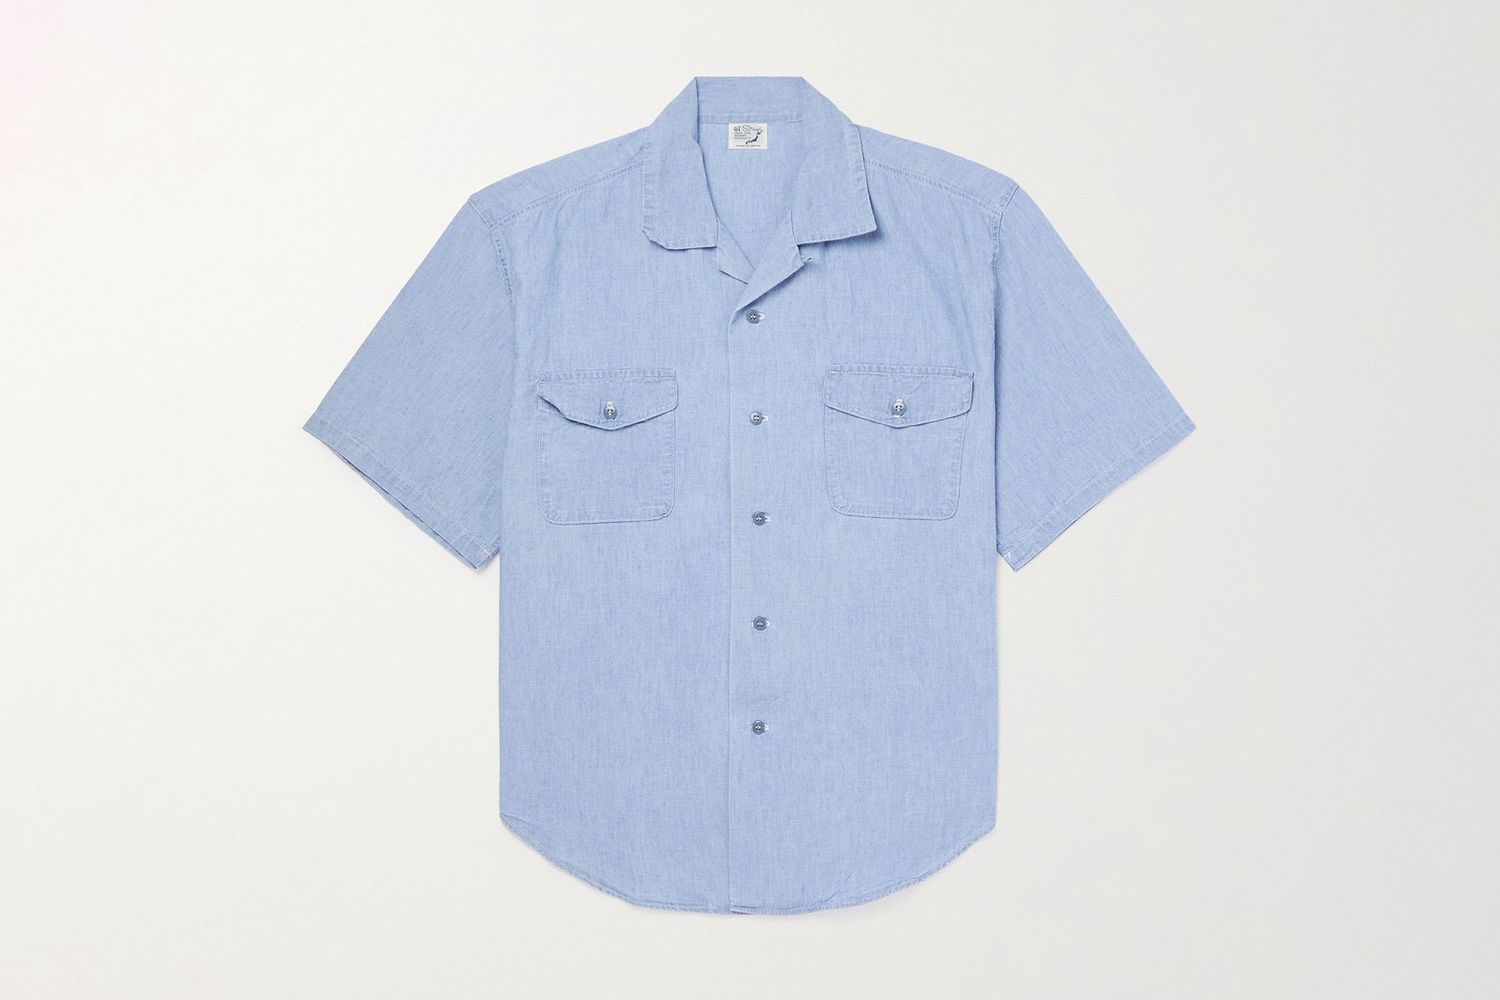 Cotton-Chambray Shirt